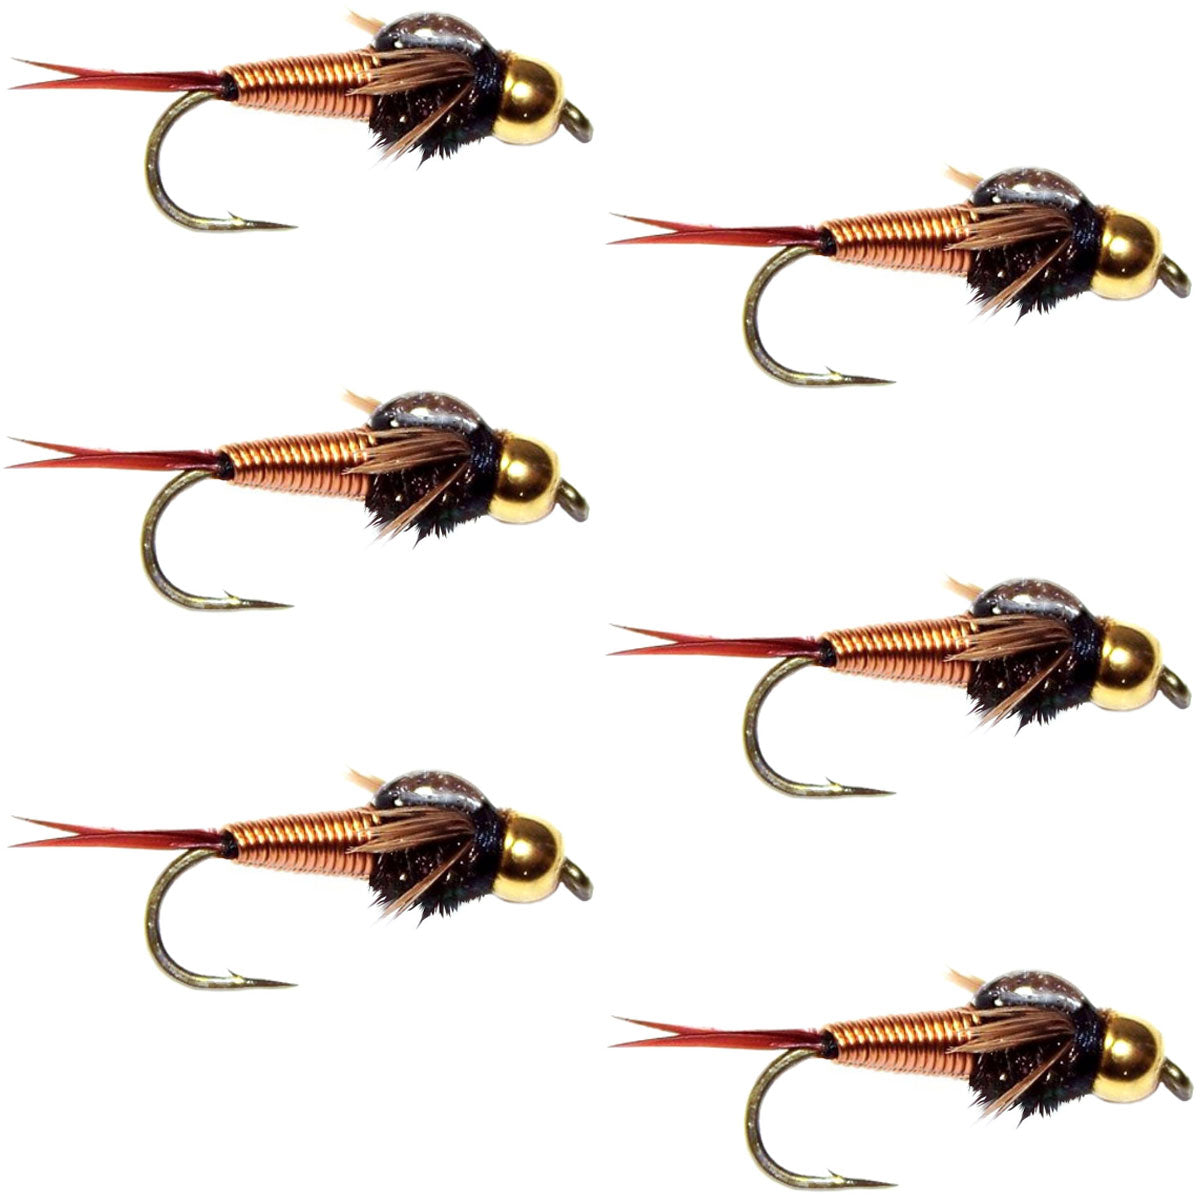 Tungsten Bead Head Copper John Nymph Fly Fishing Flies - Set of 6 Flies Hook Size 18